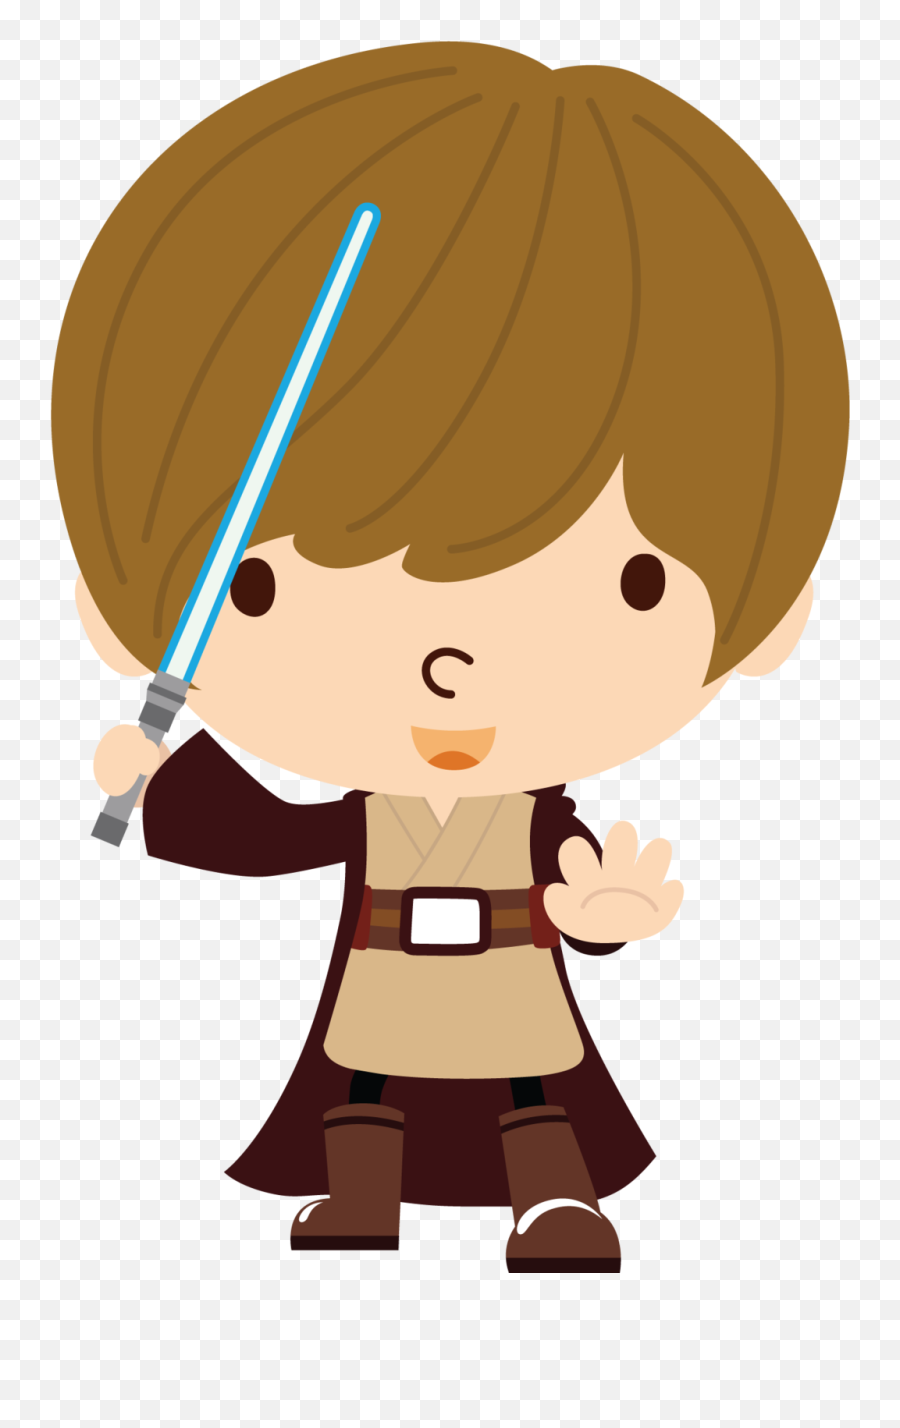 Lightsaber Emoji - Cute Star Wars Clipart,Star Wars Emoticons